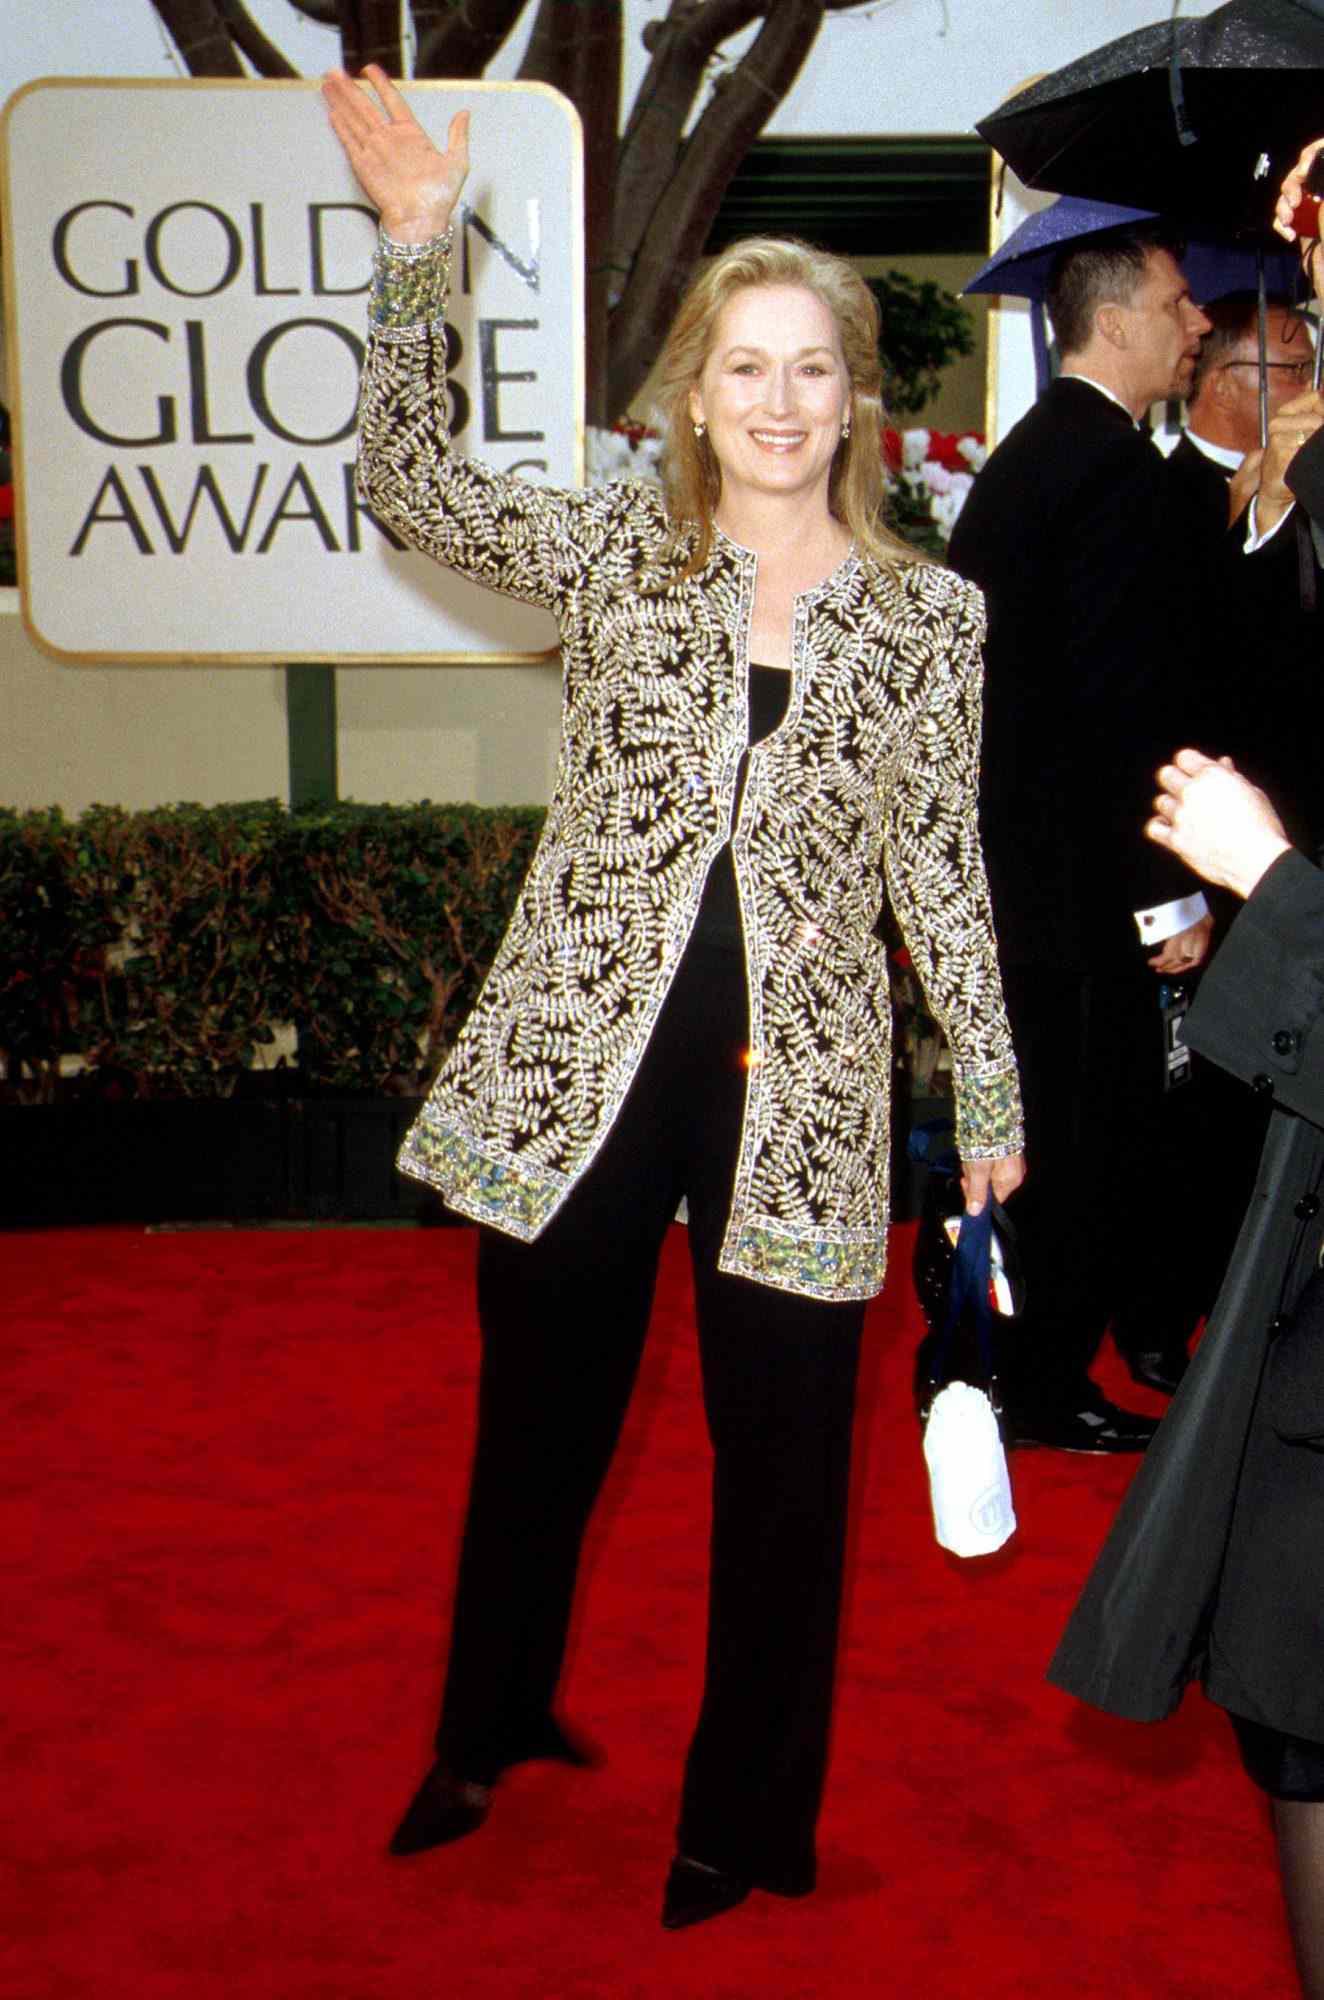 Golden Globe Awards 2000